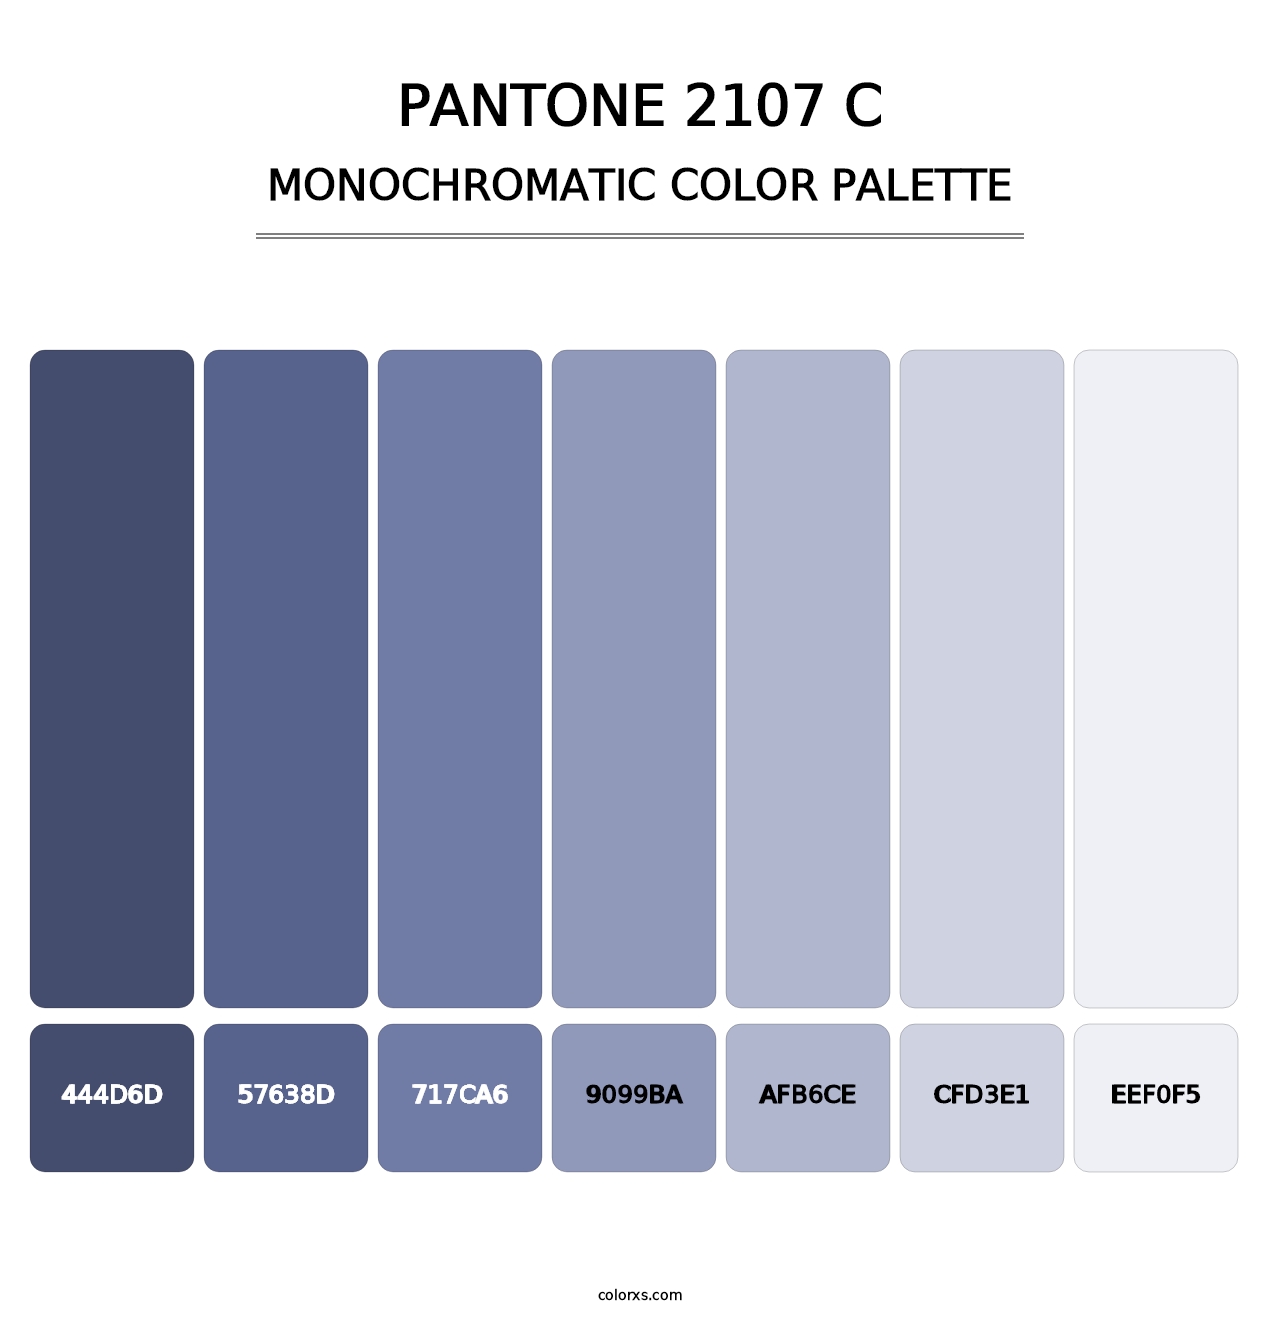 PANTONE 2107 C - Monochromatic Color Palette